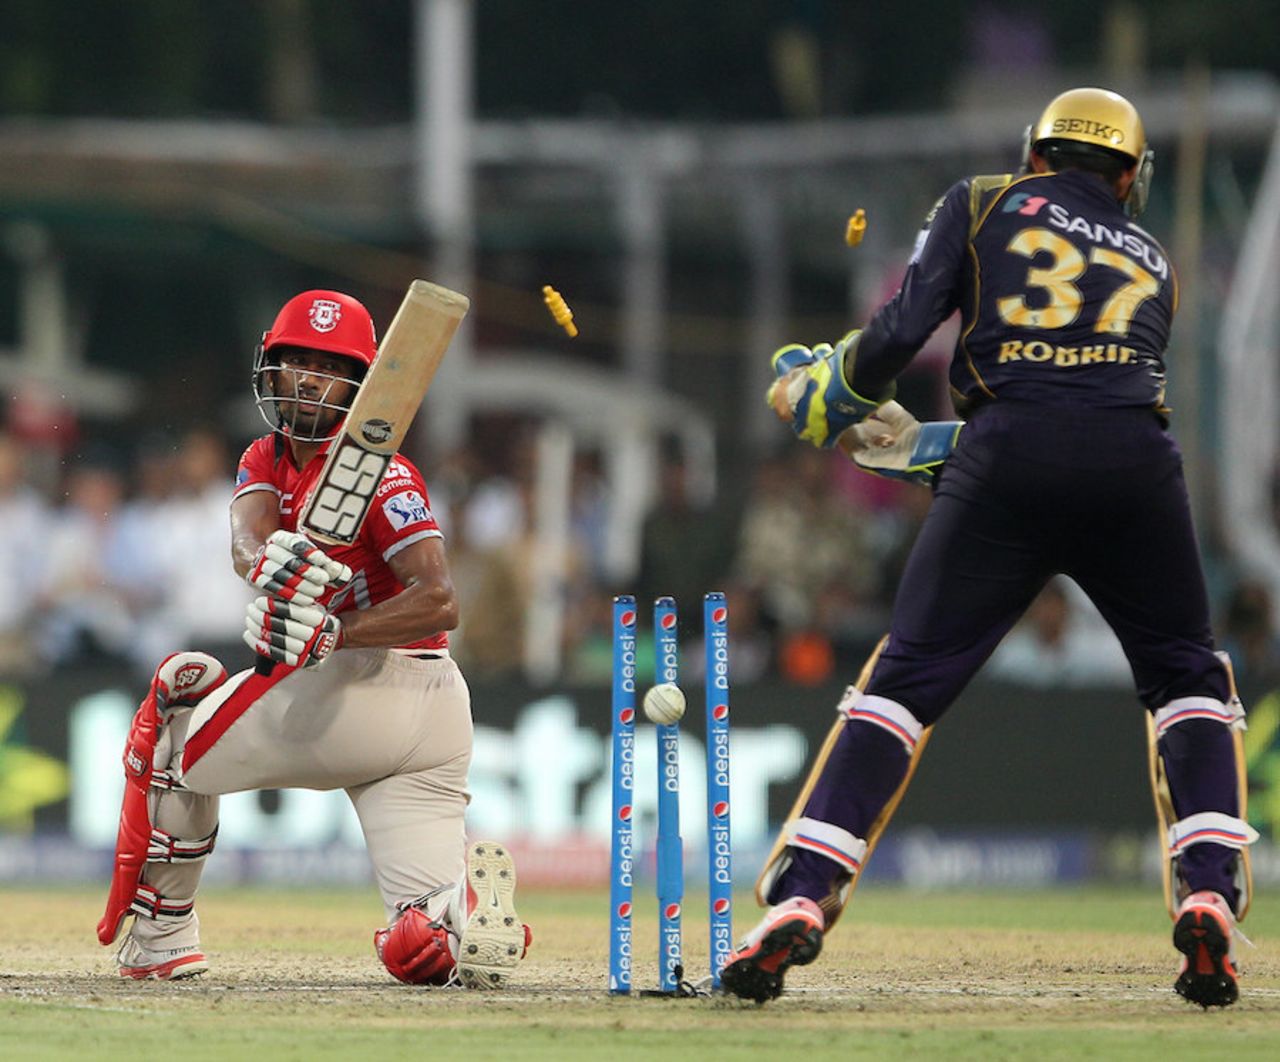 Wriddhiman Saha missed a sweep to be bowled by Sunil Narine, Kolkata Knight Riders v Kings XI Punjab, IPL 2015, Kolkata, May 9, 2015